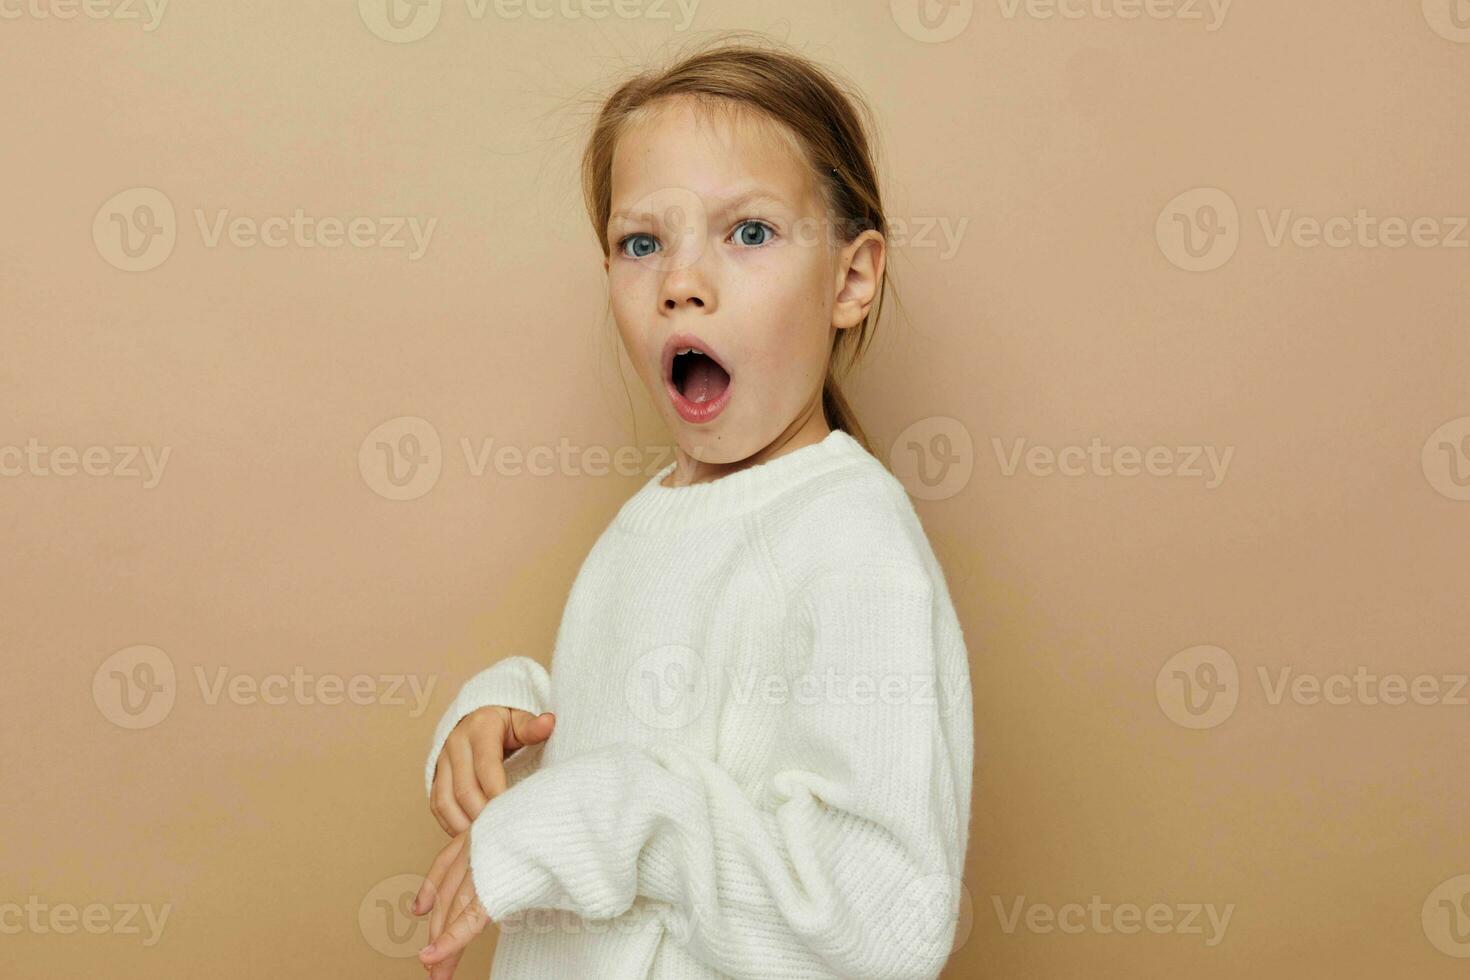 bonito joven niña en blanco suéter posando mano gestos estilo de vida inalterado foto